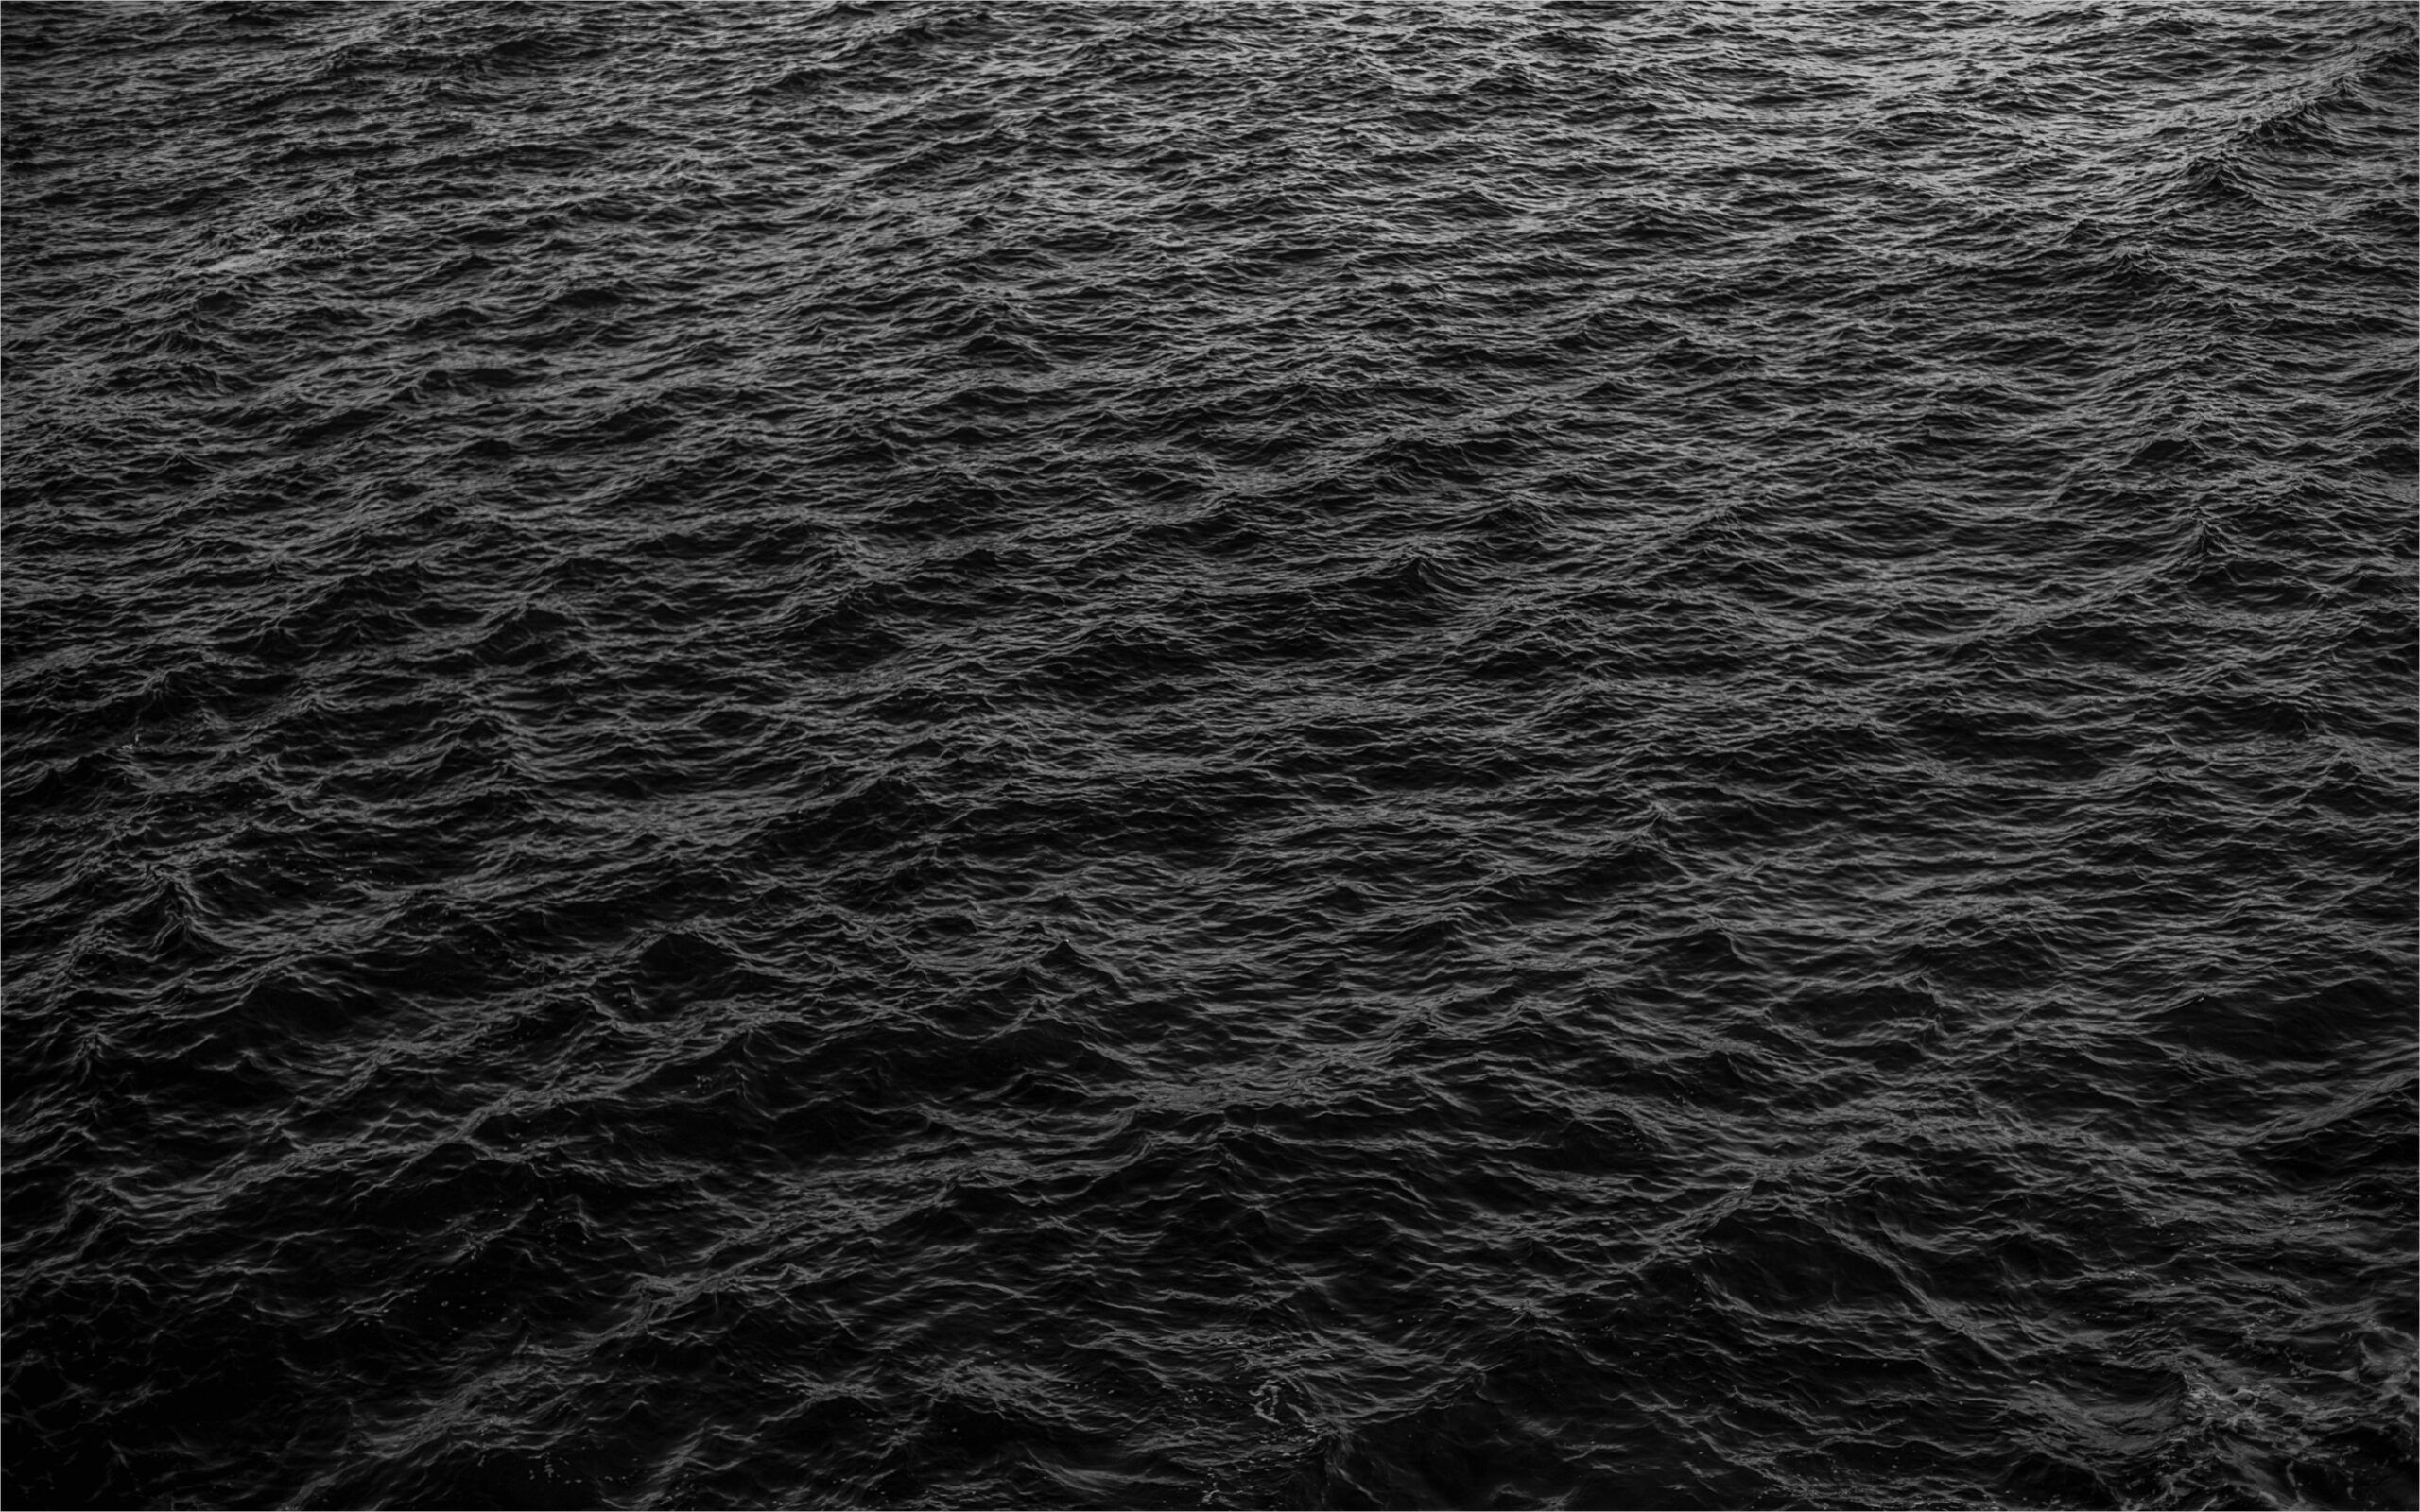 13+] Dark Sea 4K Wallpapers - WallpaperSafari